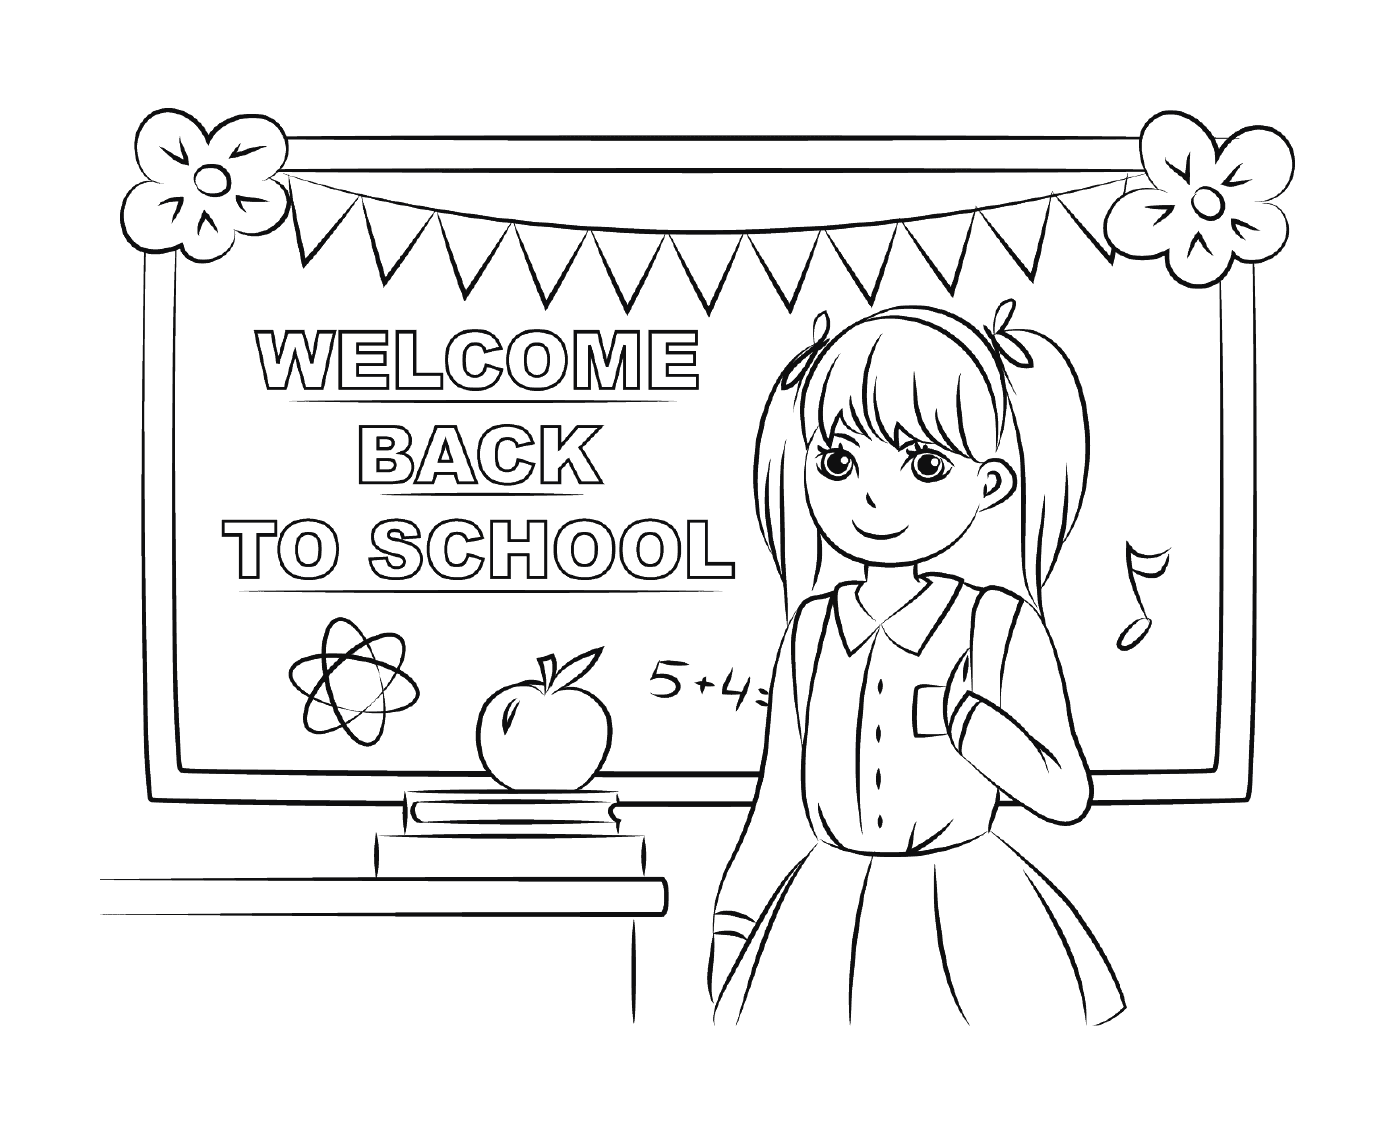  Bienvenido de nuevo a la escuela 